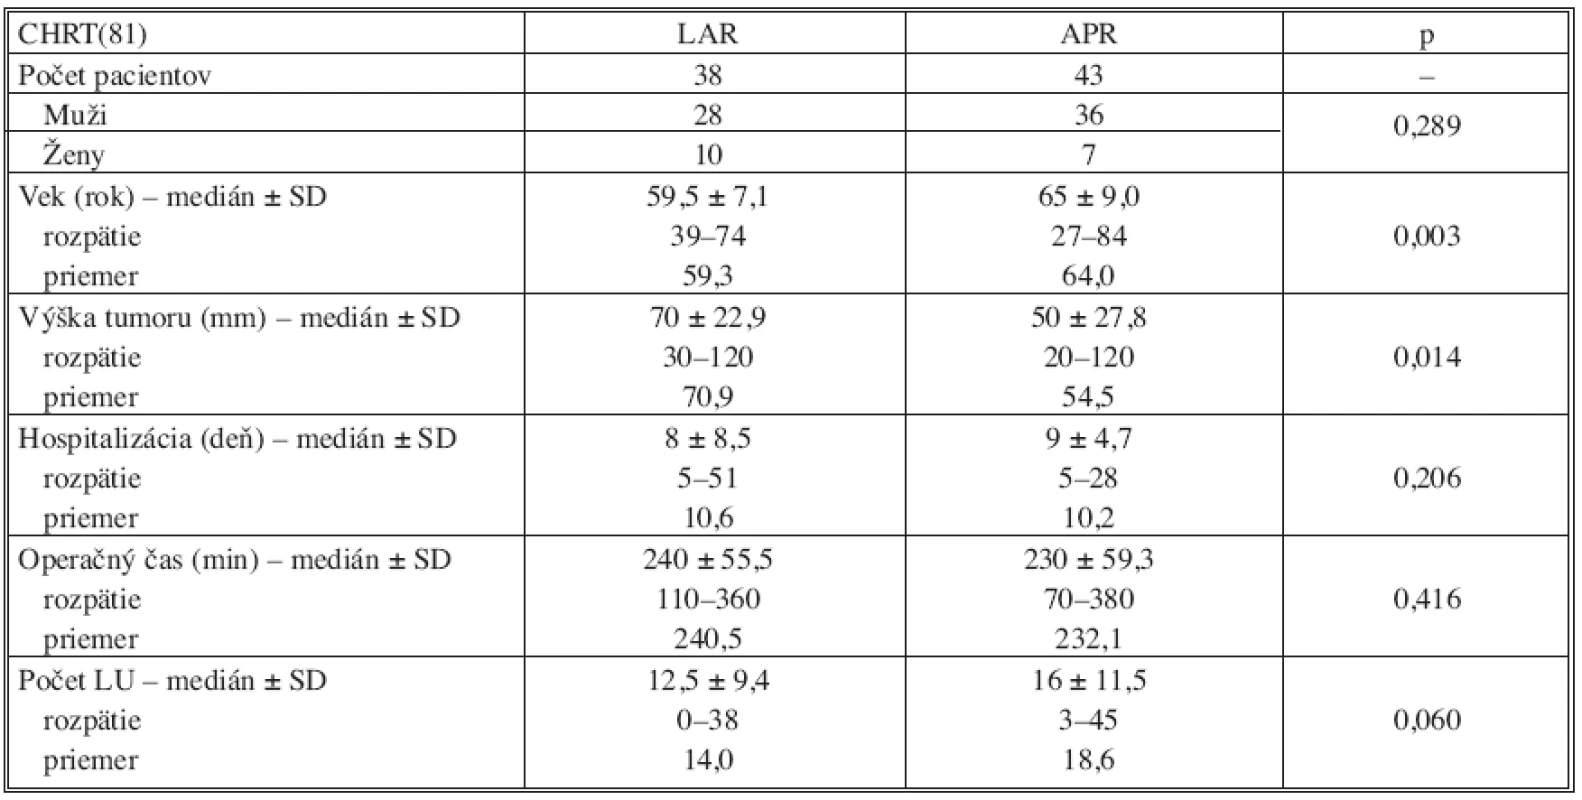 Vyhodnotenie výsledkov v skupine operovaných pacientov po predoperačnej chemorádioterapii (CHRT)
Tab. 5. Results evaluation in the group of operated subjects with preoperative chemotherapy (CHRT)
